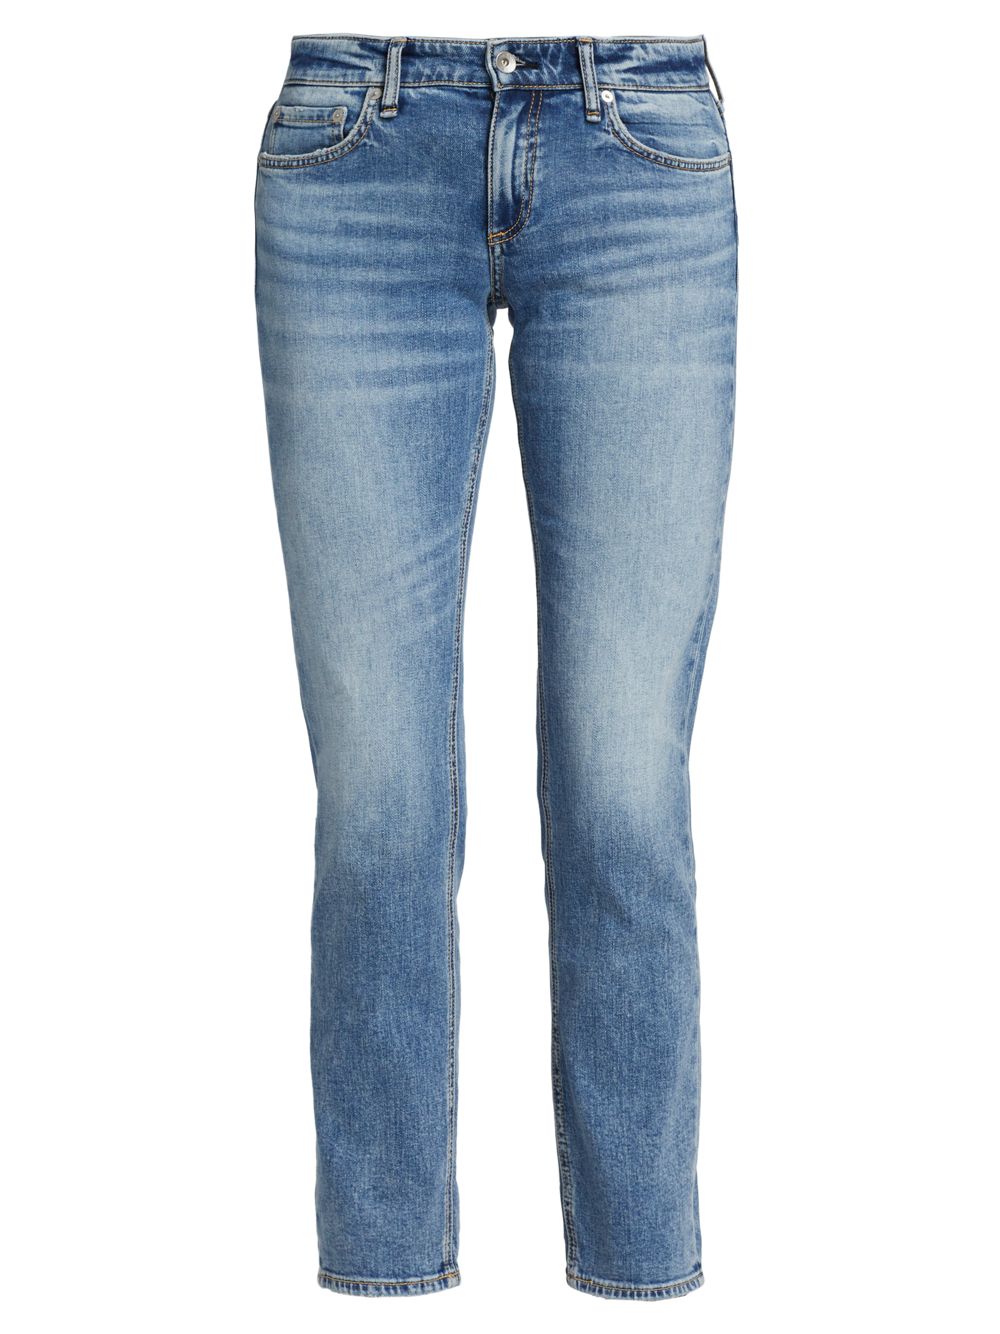 Узкие джинсы-бойфренды Dre с низкой посадкой rag & bone узкие джинсы с низкой посадкой серый